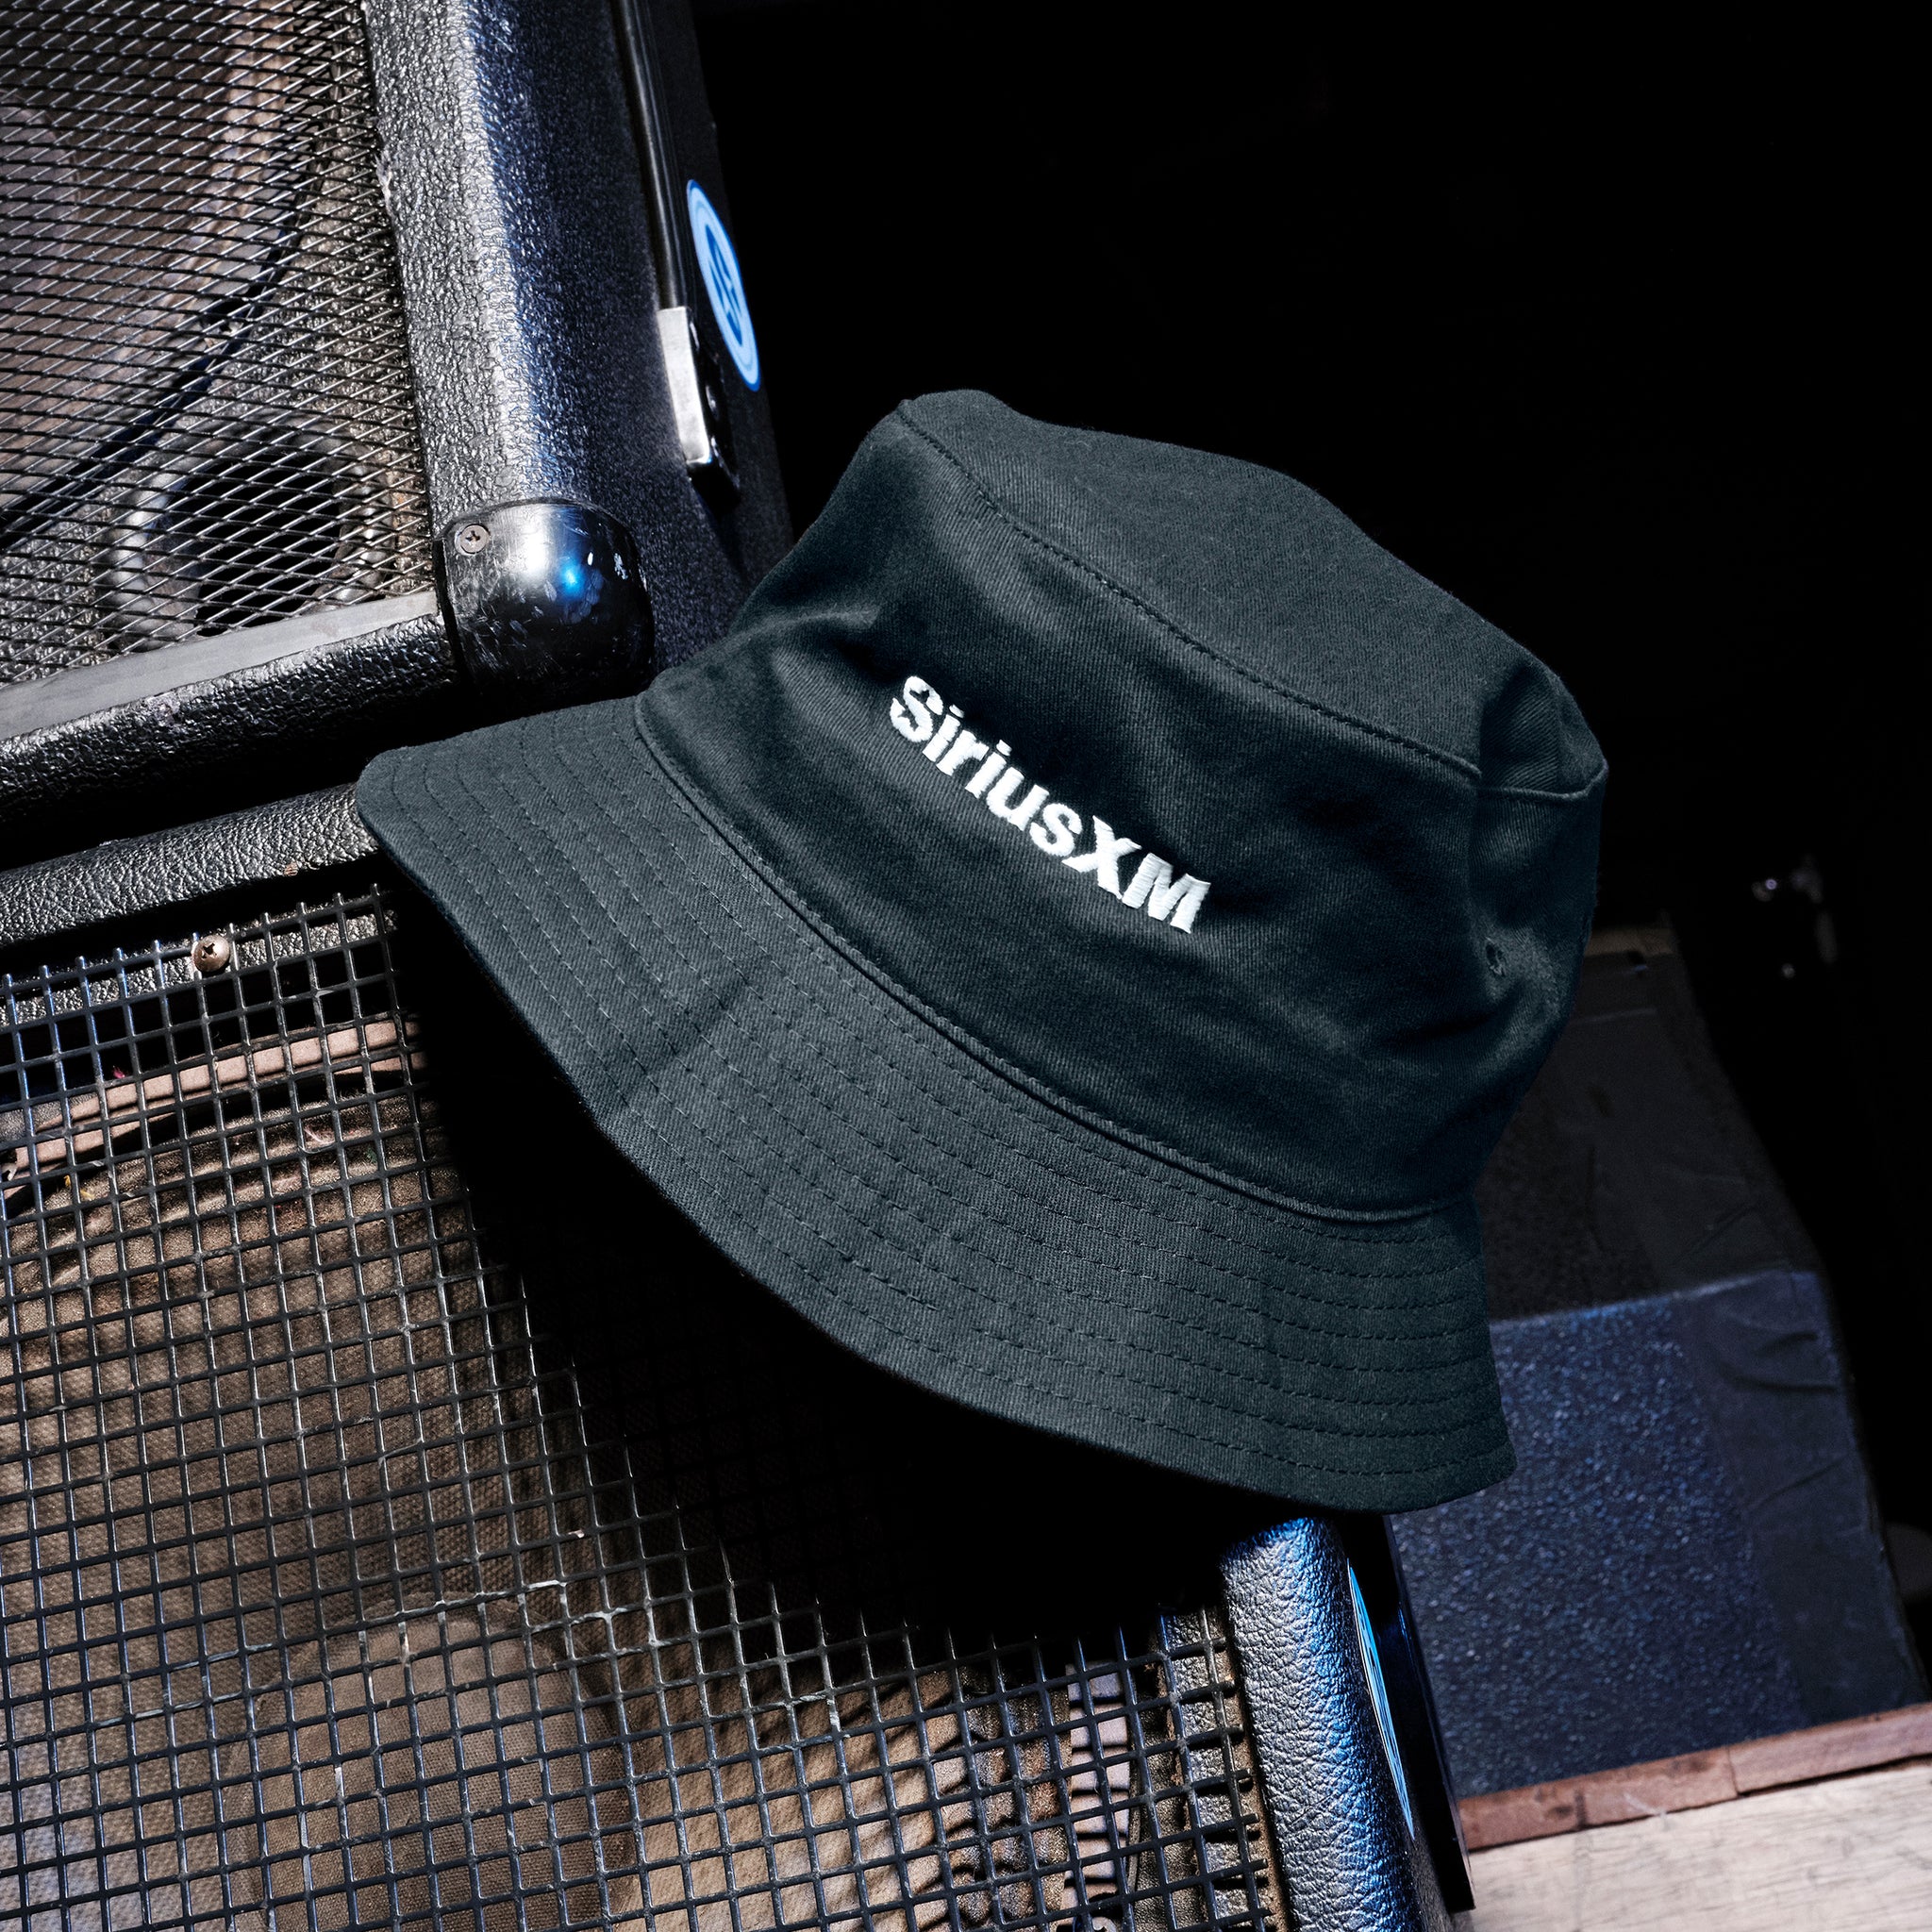 SiriusXM: Next Gen Embroidered Bucket Hat